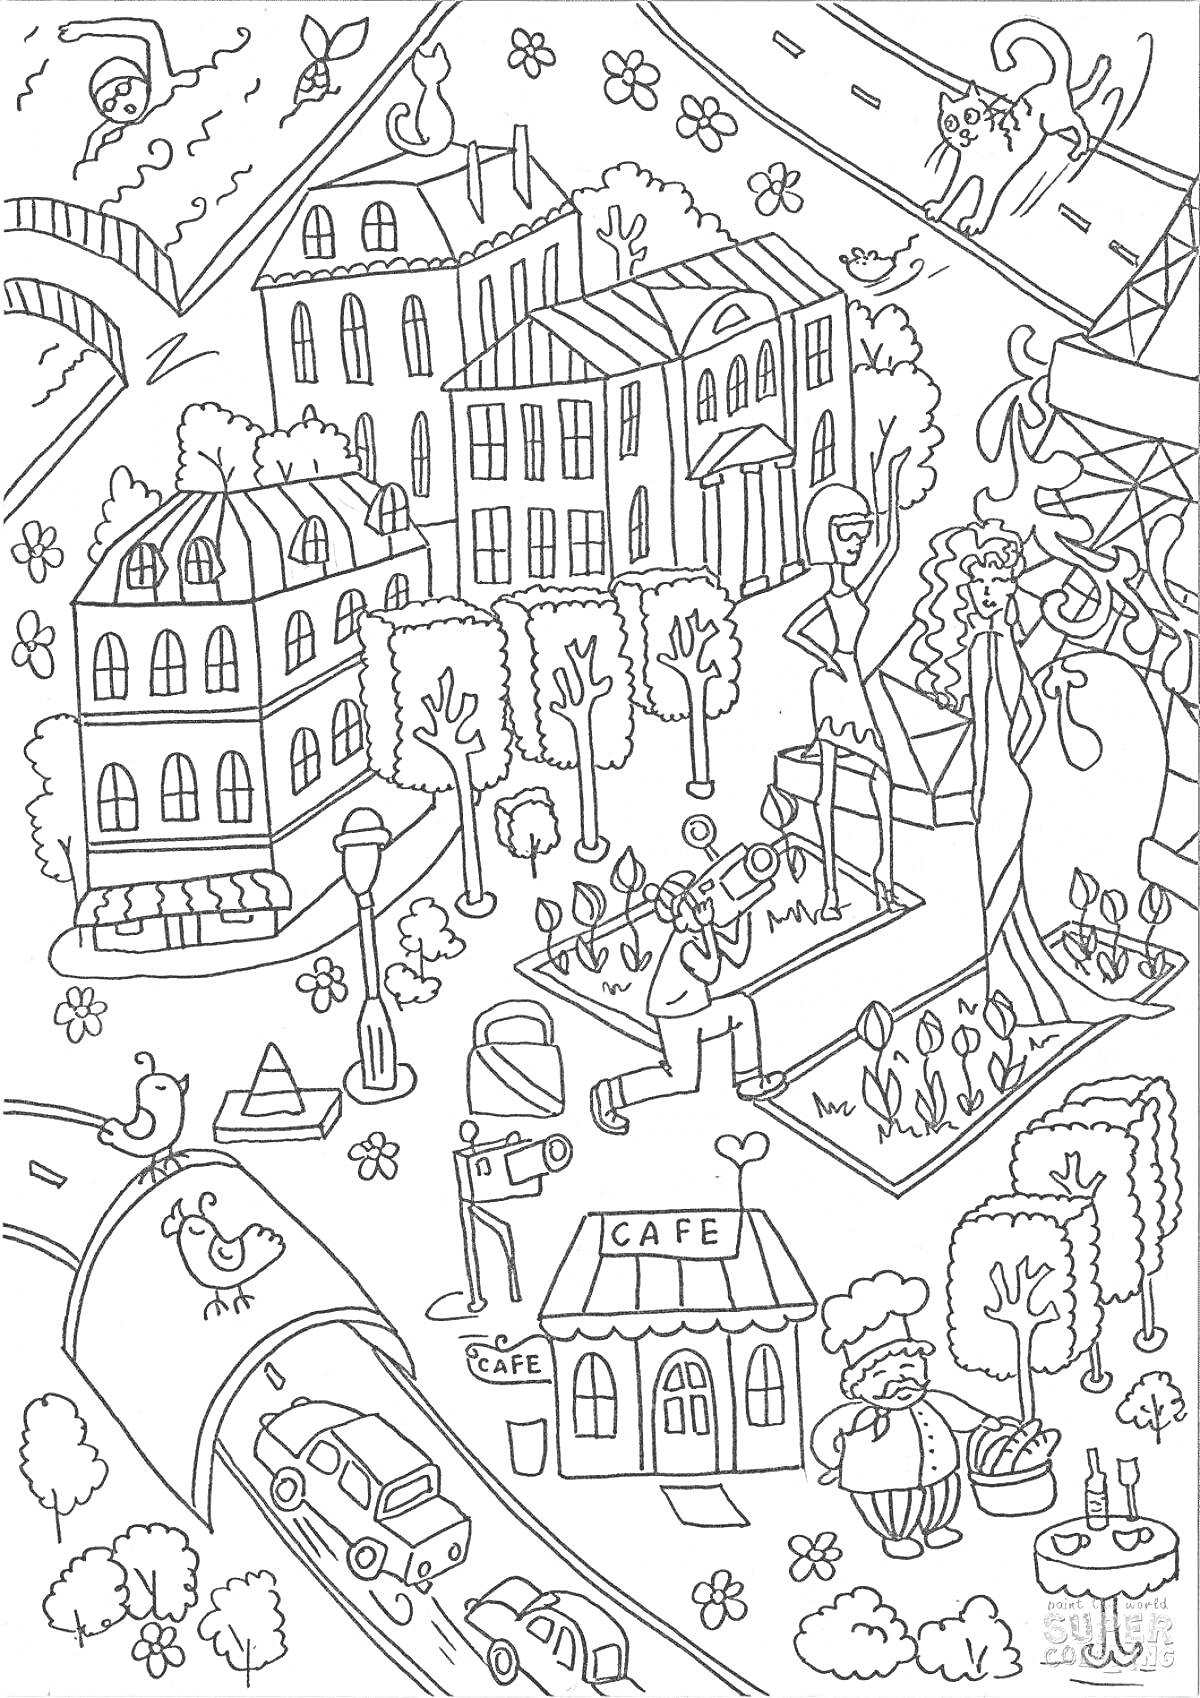 На раскраске изображено: Здания, Улица, Машины, Кафе, Деревья, Мост, Статуя, Кошка, Цветы, Птица, Животное, Человек